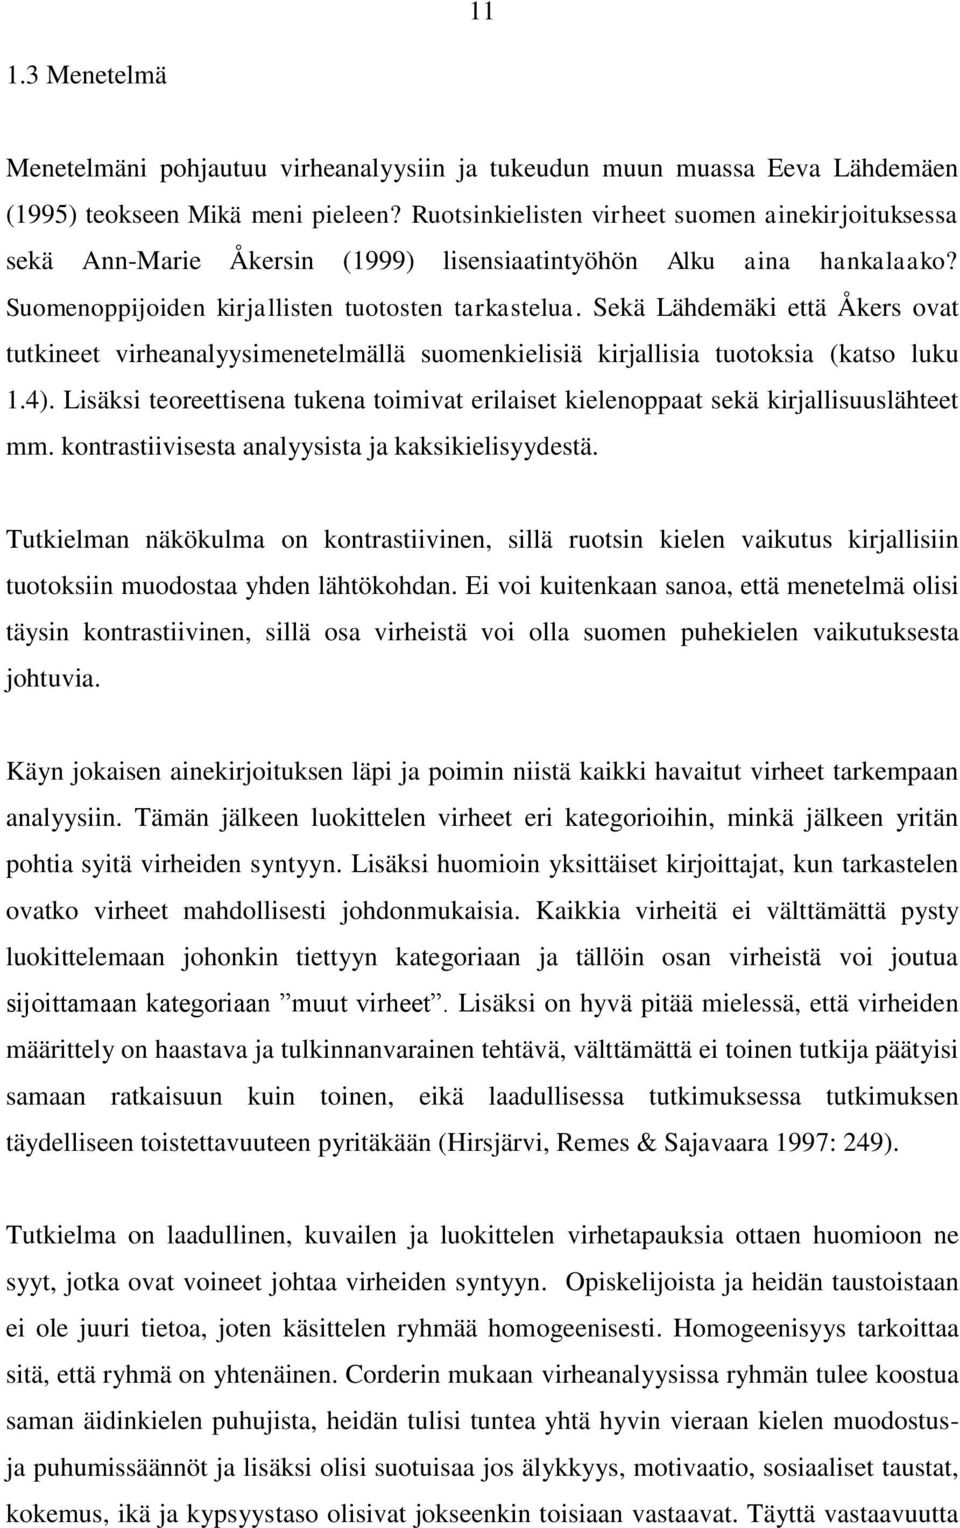 Sekä Lähdemäki että Åkers ovat tutkineet virheanalyysimenetelmällä suomenkielisiä kirjallisia tuotoksia (katso luku 1.4).